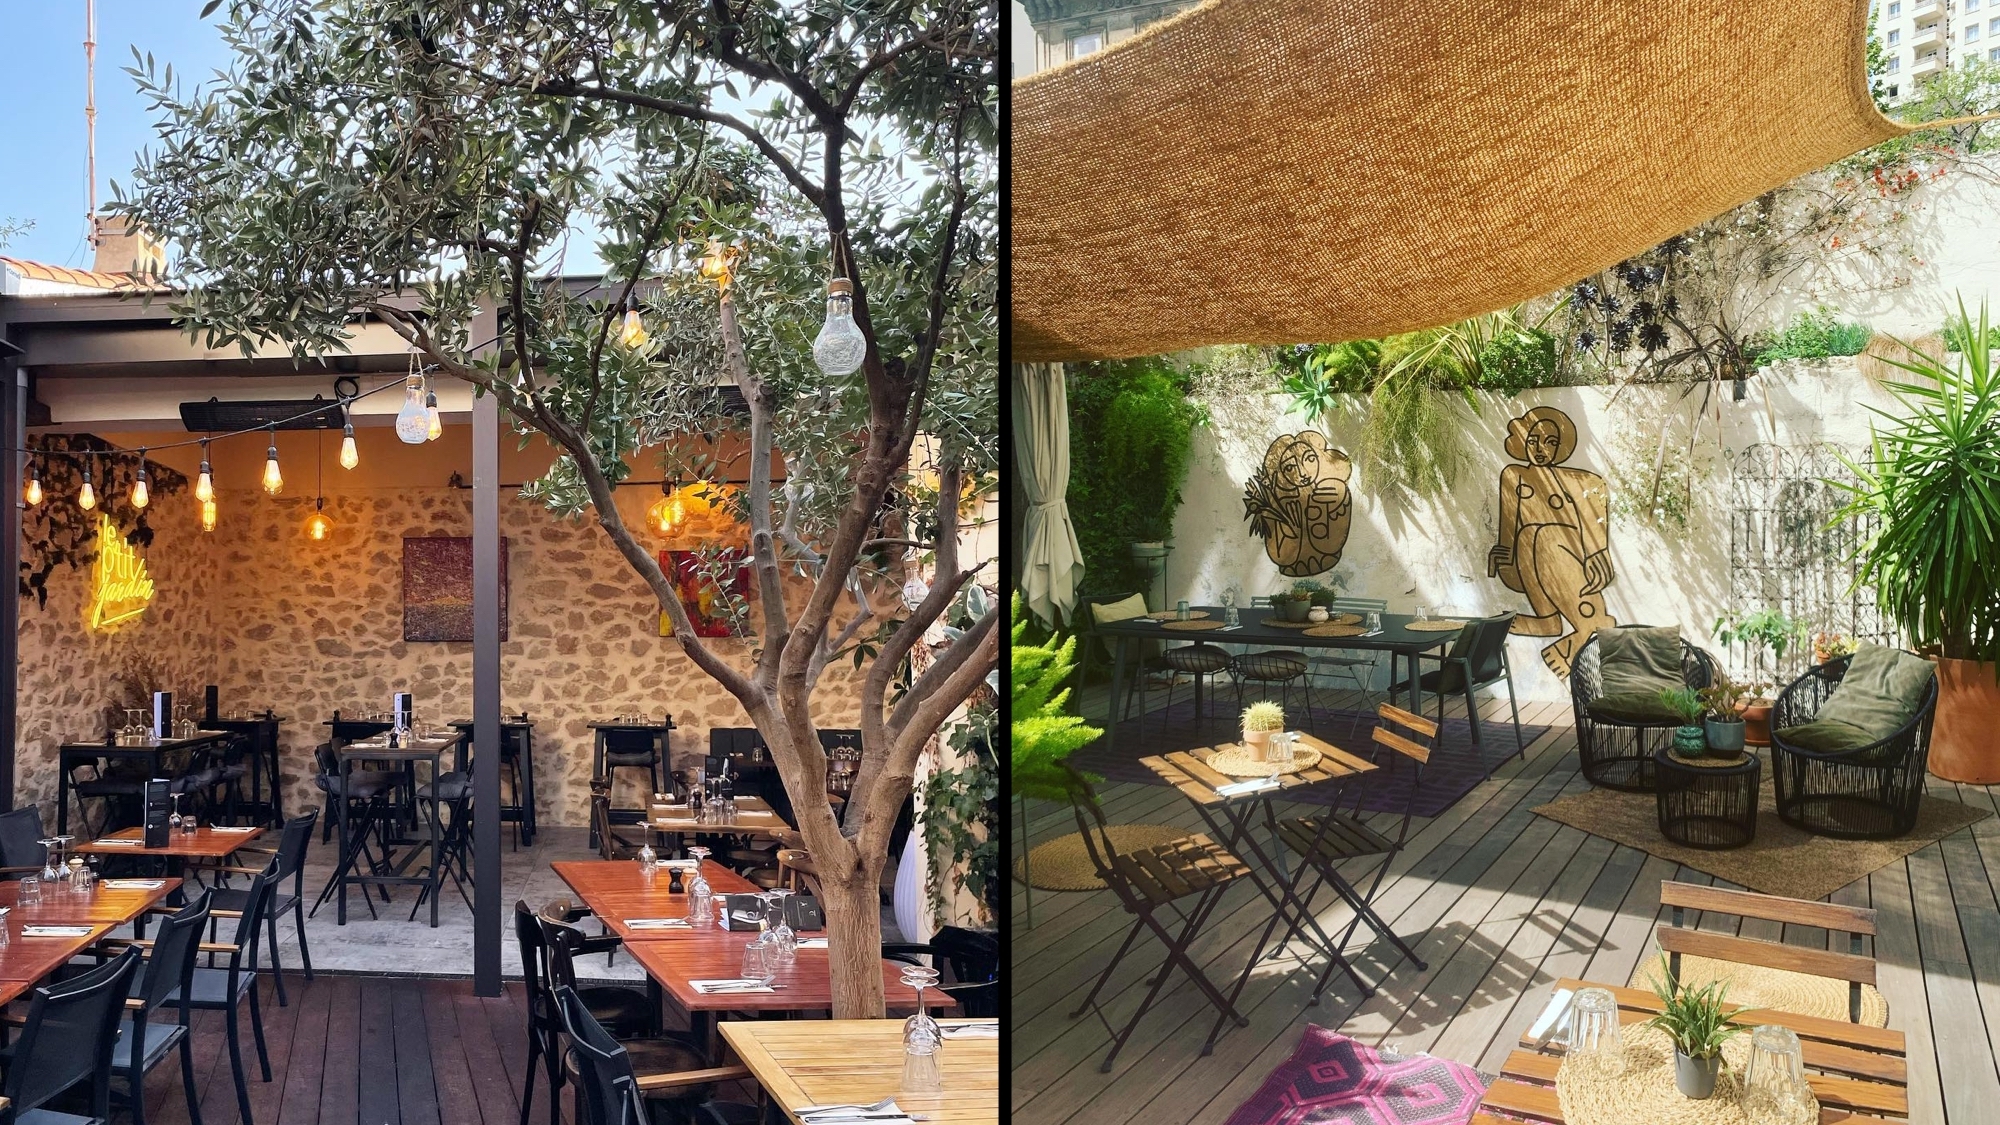 Marseille : Top des restaurants avec patio végétalisé où déjeuner